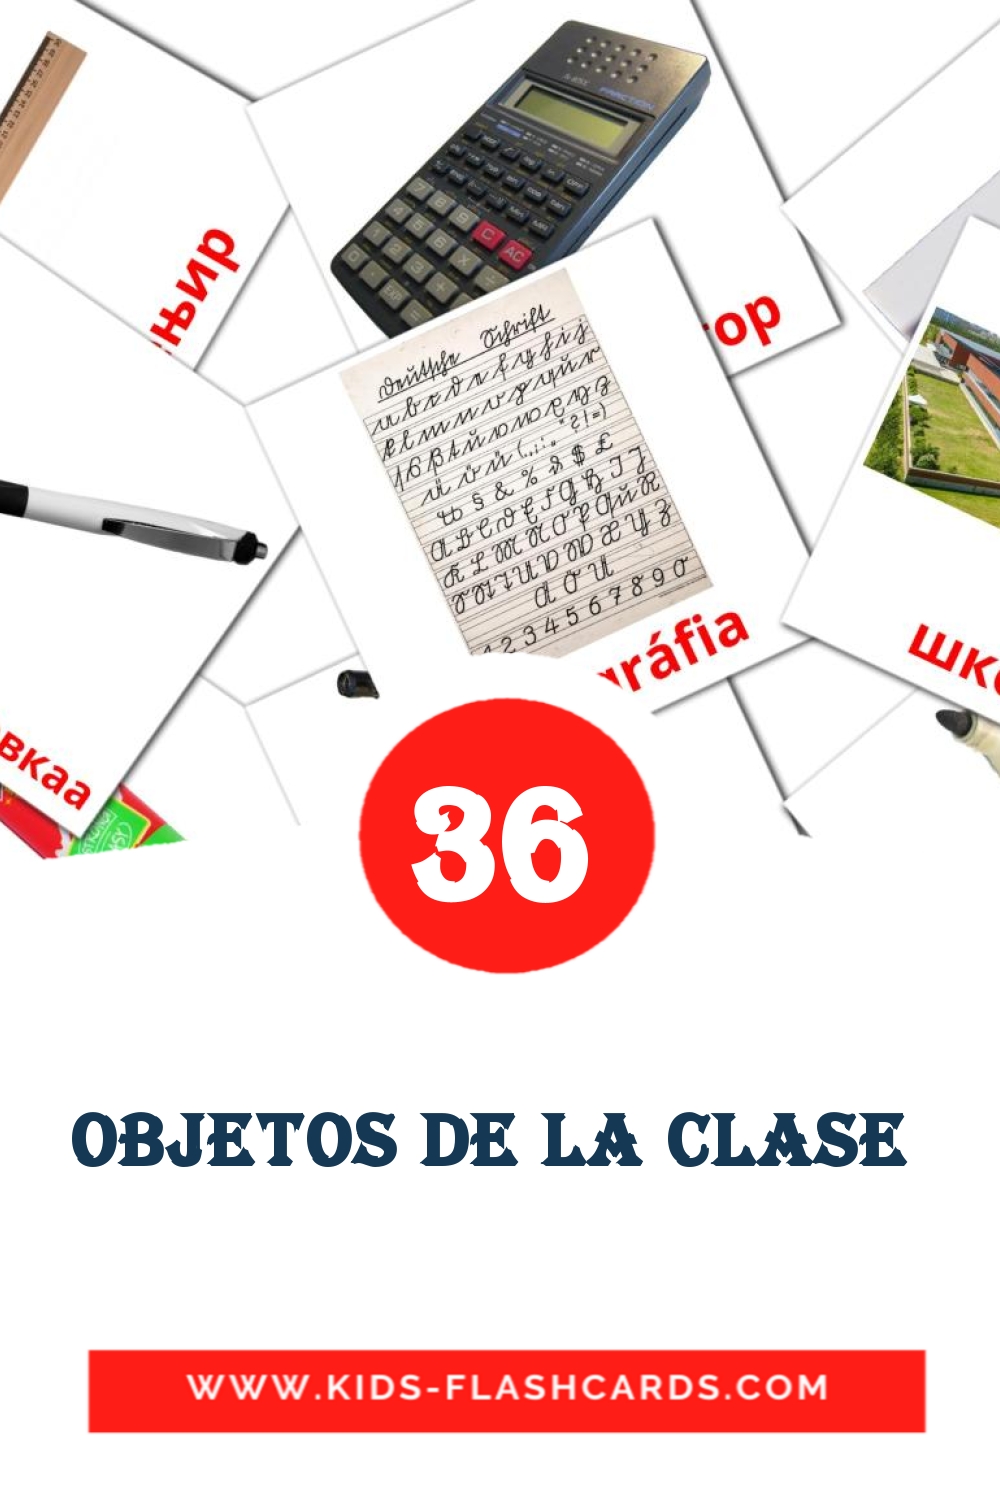 36 carte illustrate di objetos de la clase  per la scuola materna in amárica